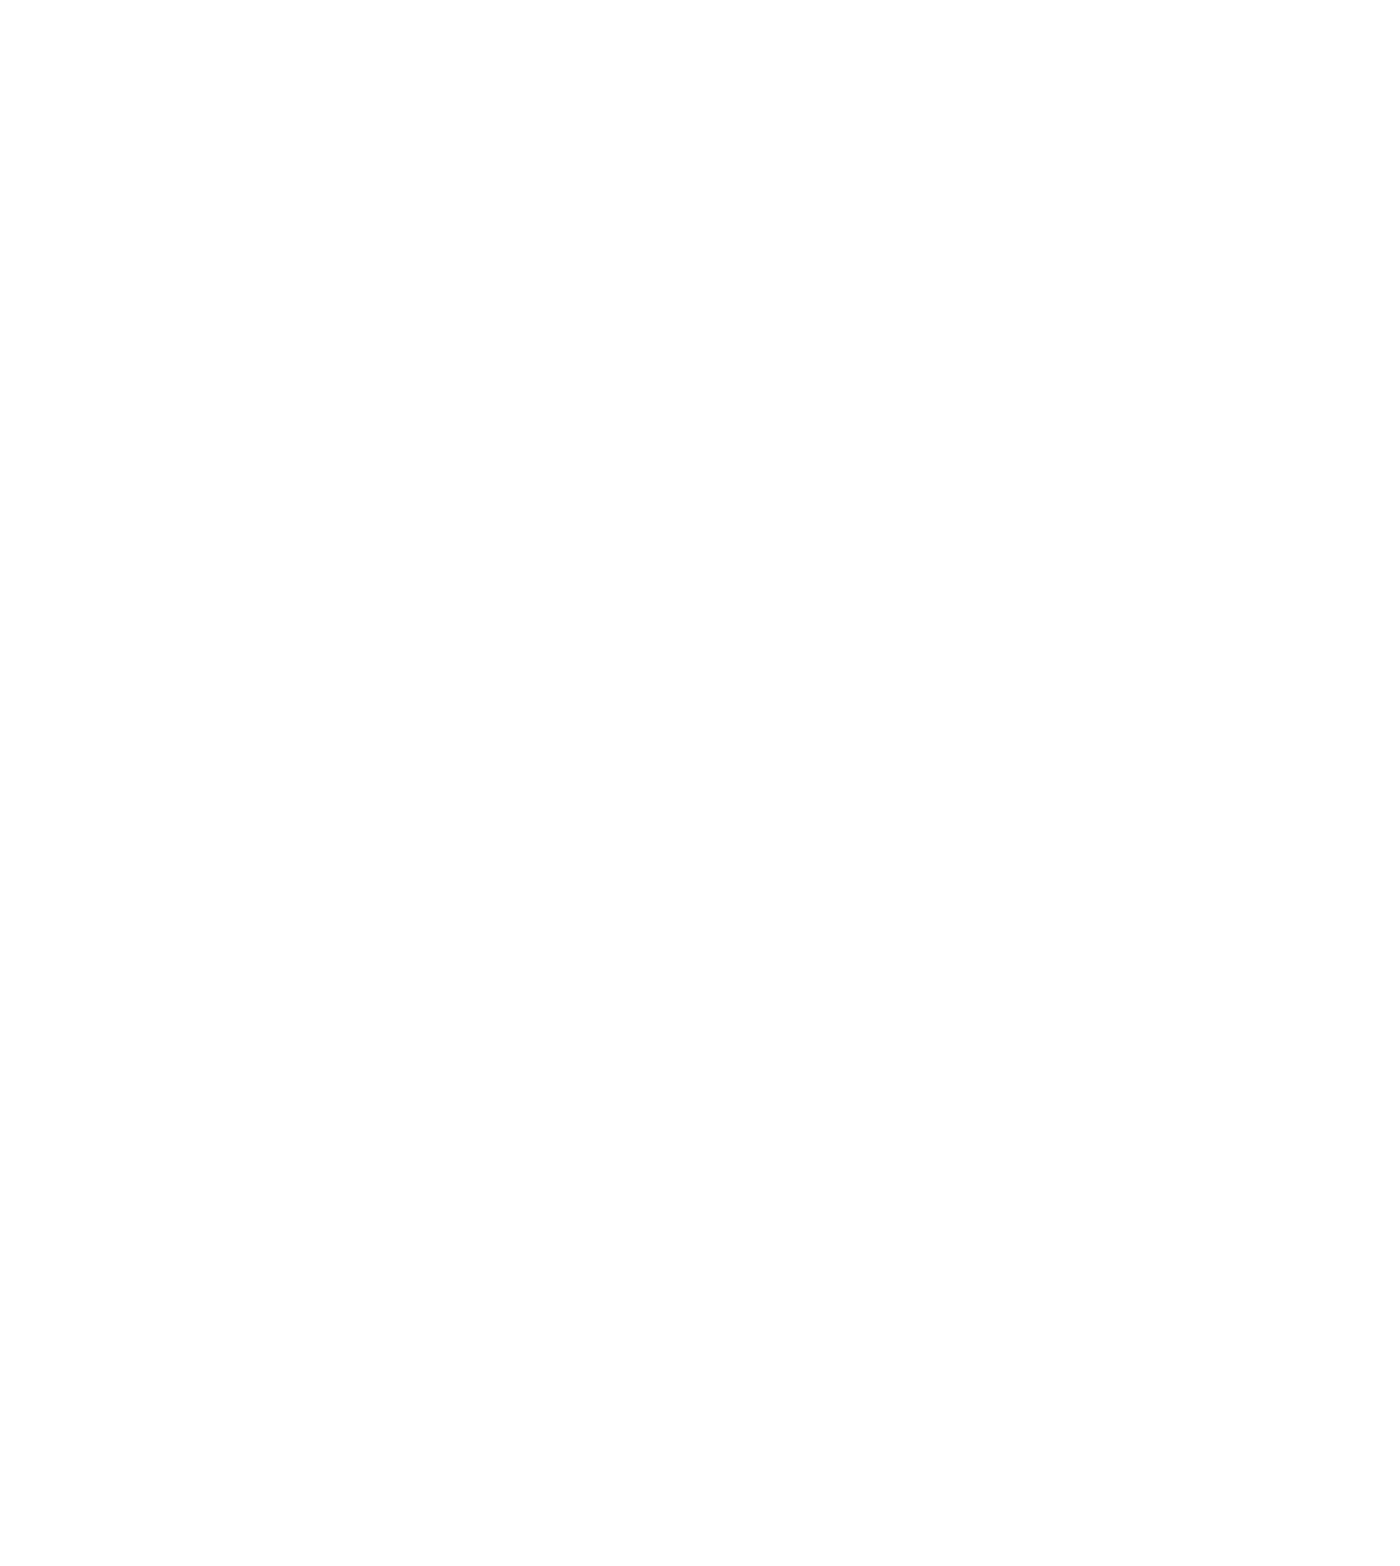 Ontex Group logo for dark backgrounds (transparent PNG)